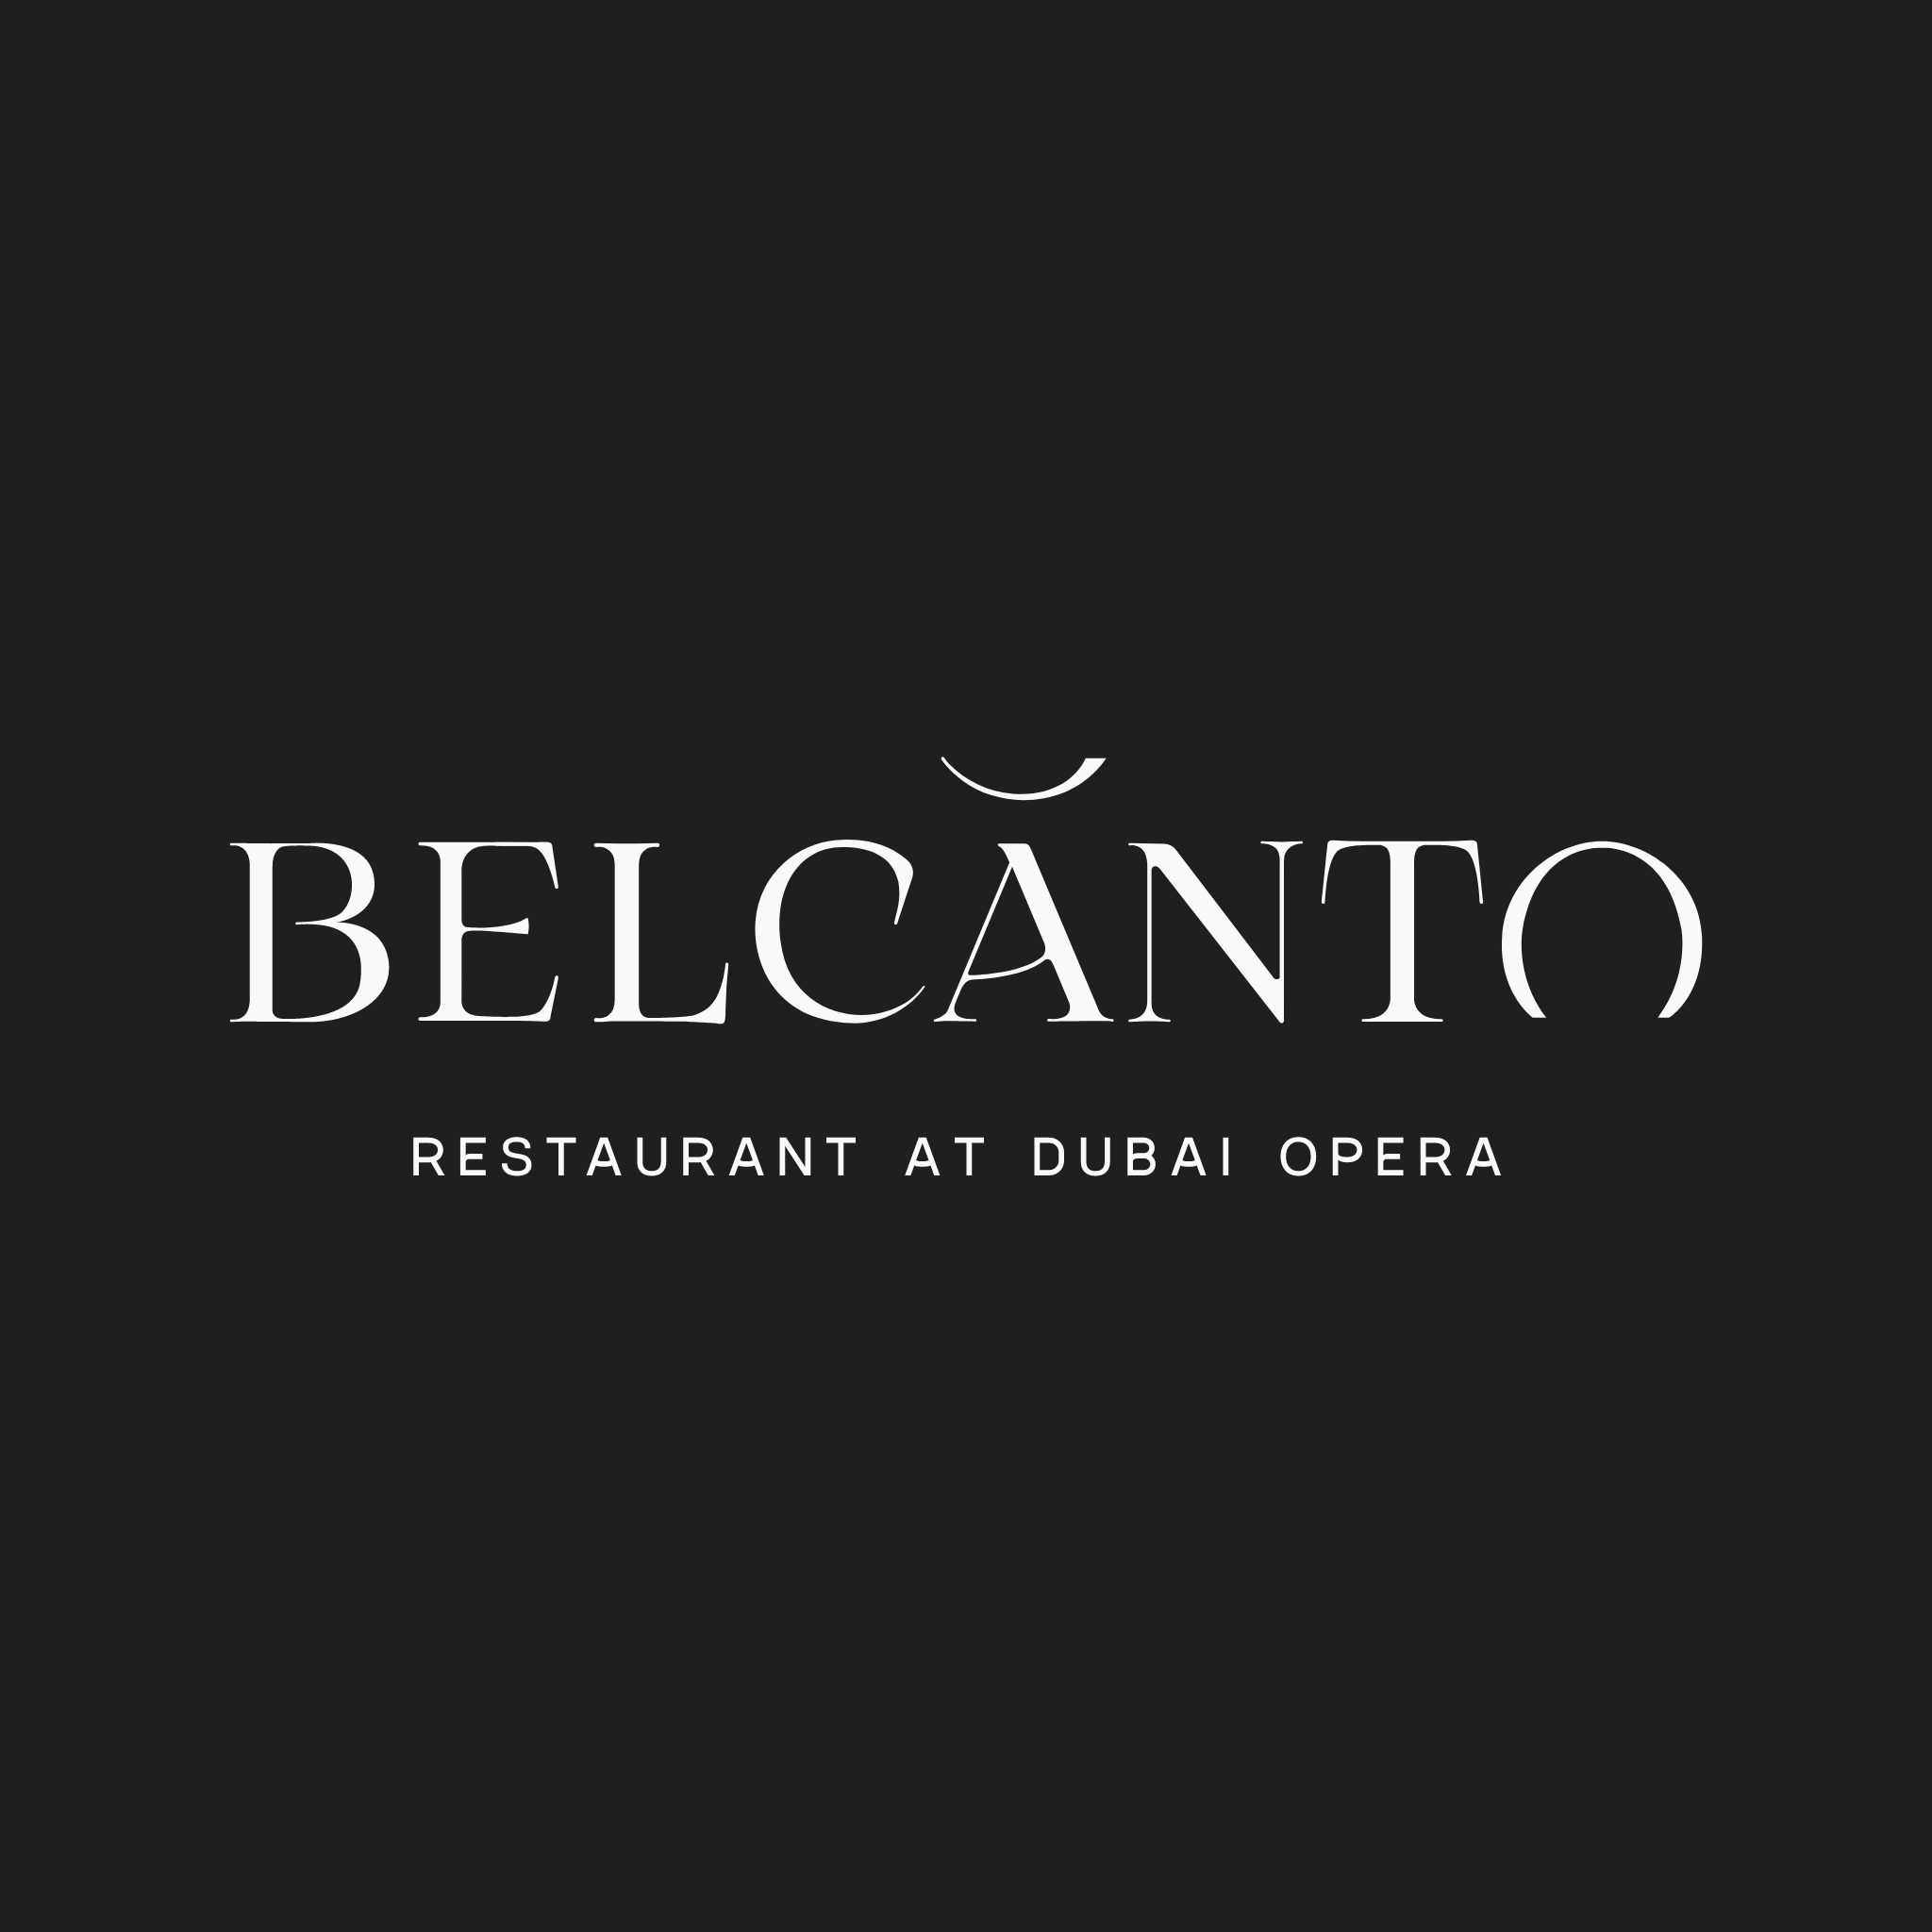 Belcanto - Coming Soon in UAE